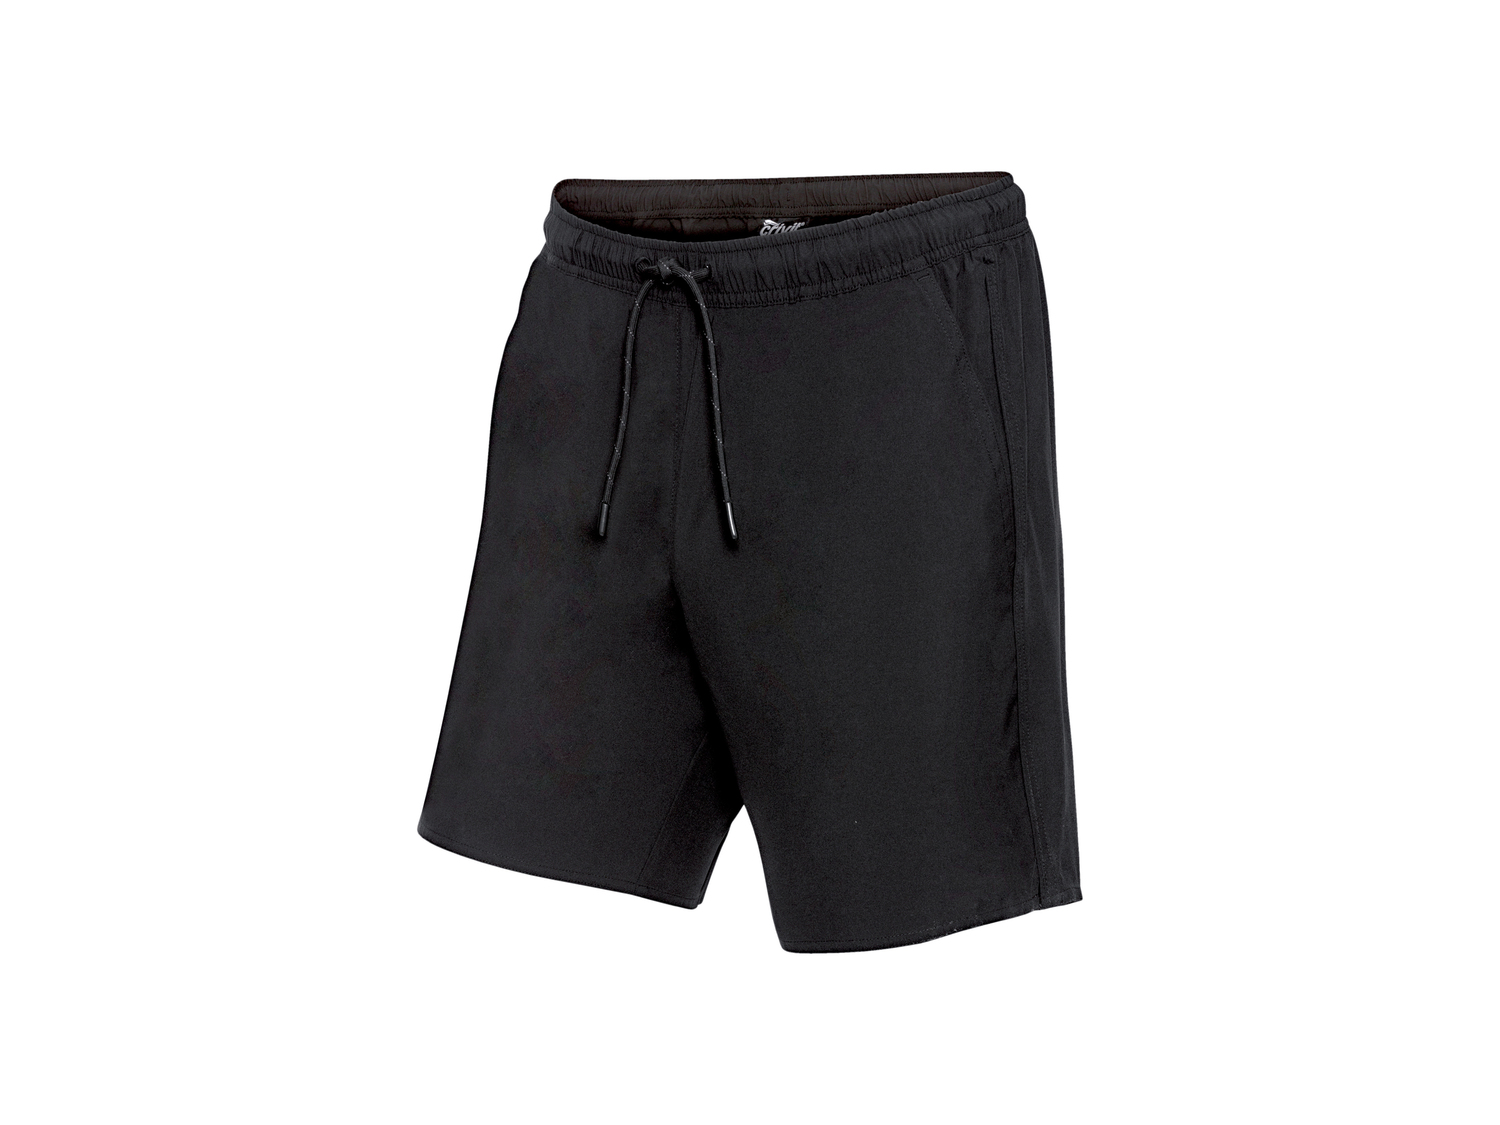 Shorts sportivi da uomo Crivit, prezzo 5.99 &#8364; 
Misure: S-XL
Taglie disponibili

Caratteristiche

- ...